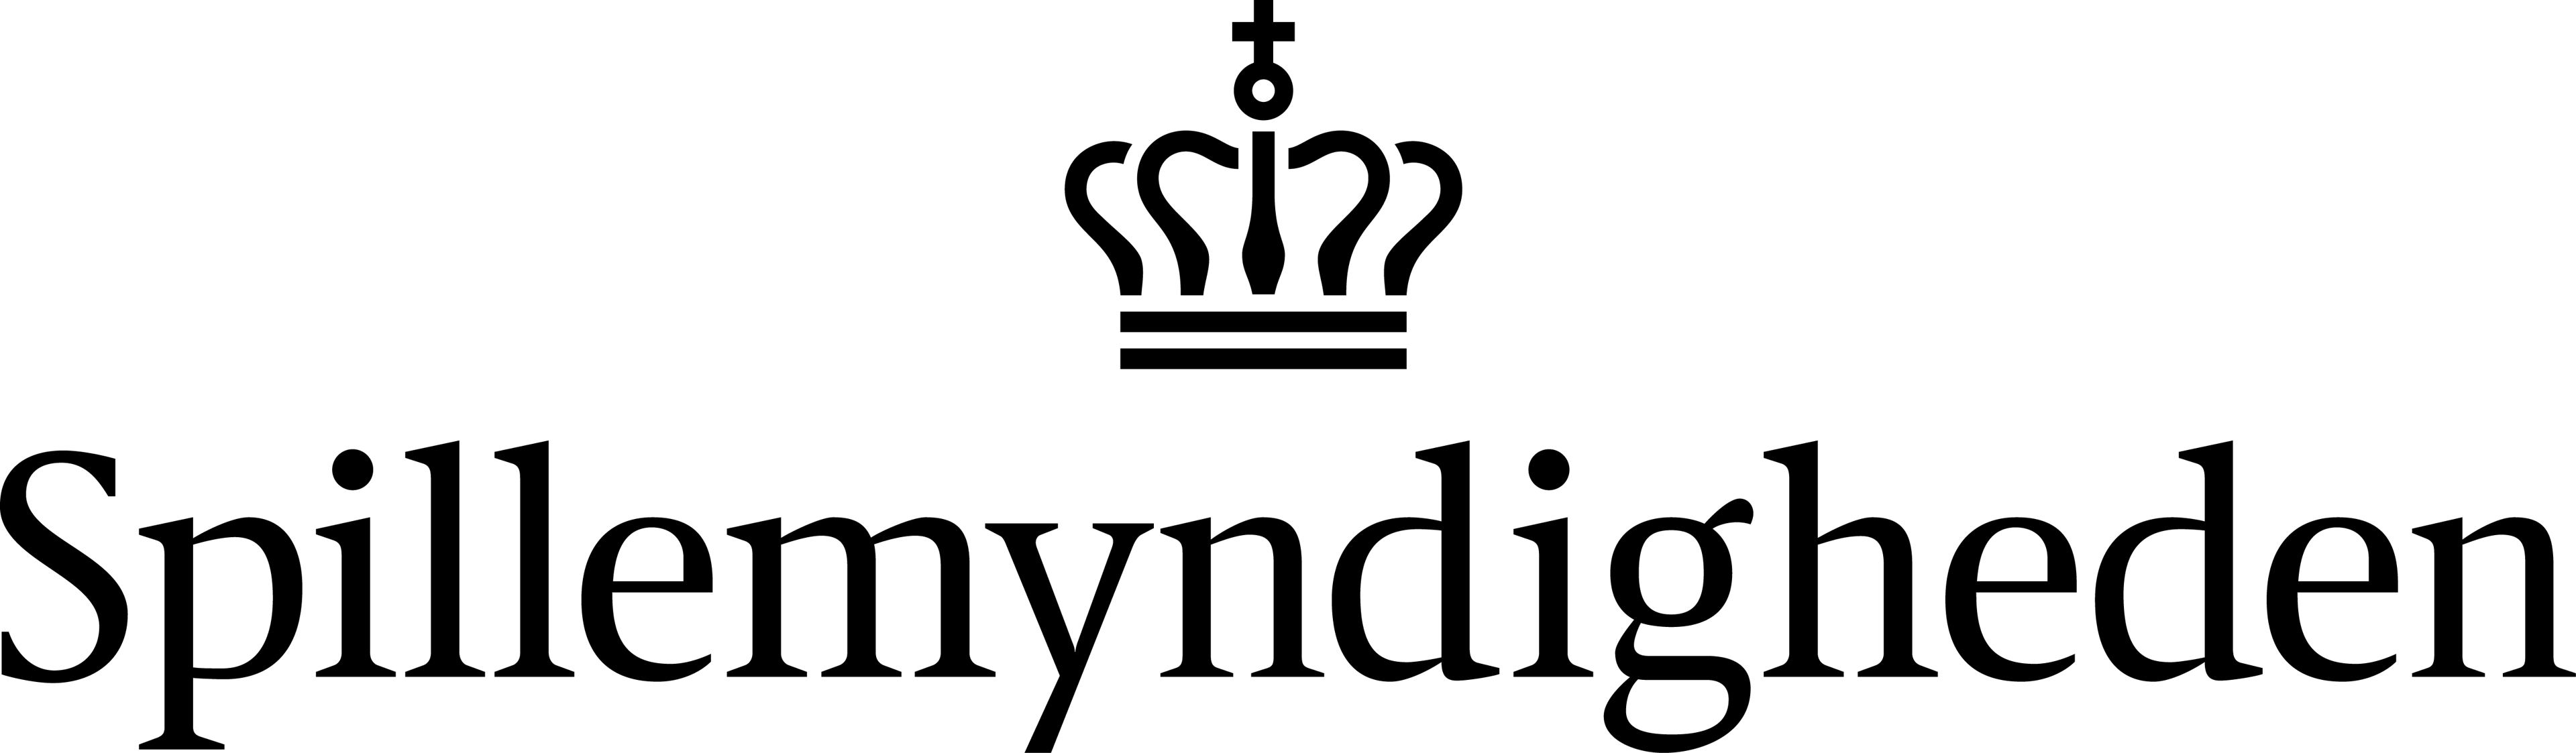 Spillemyndigheden logo